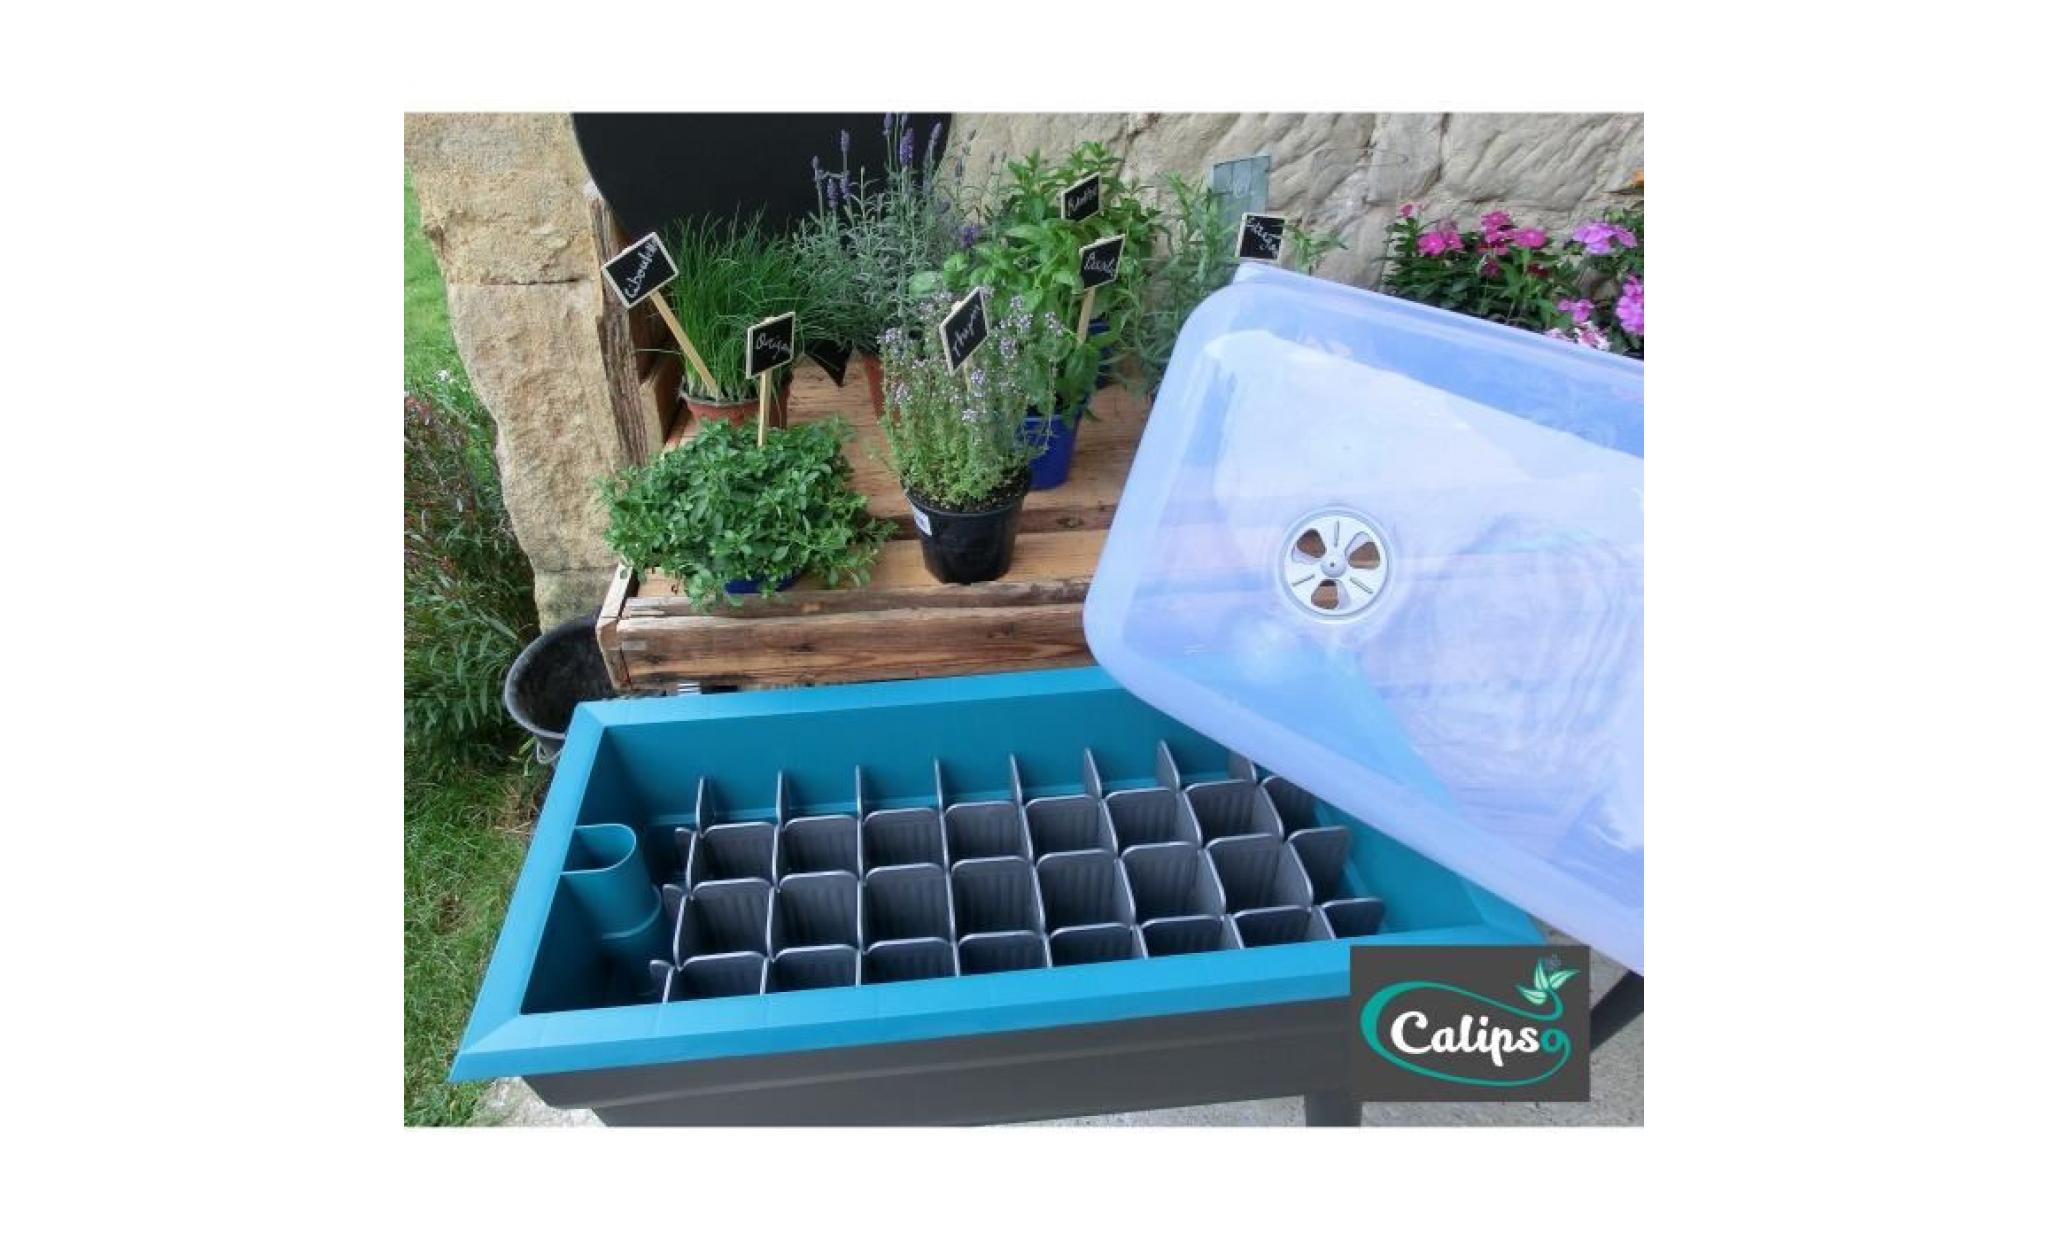 calipso jardinière combi en plastique recyclable   40 l   gris et bleu turquoise pas cher